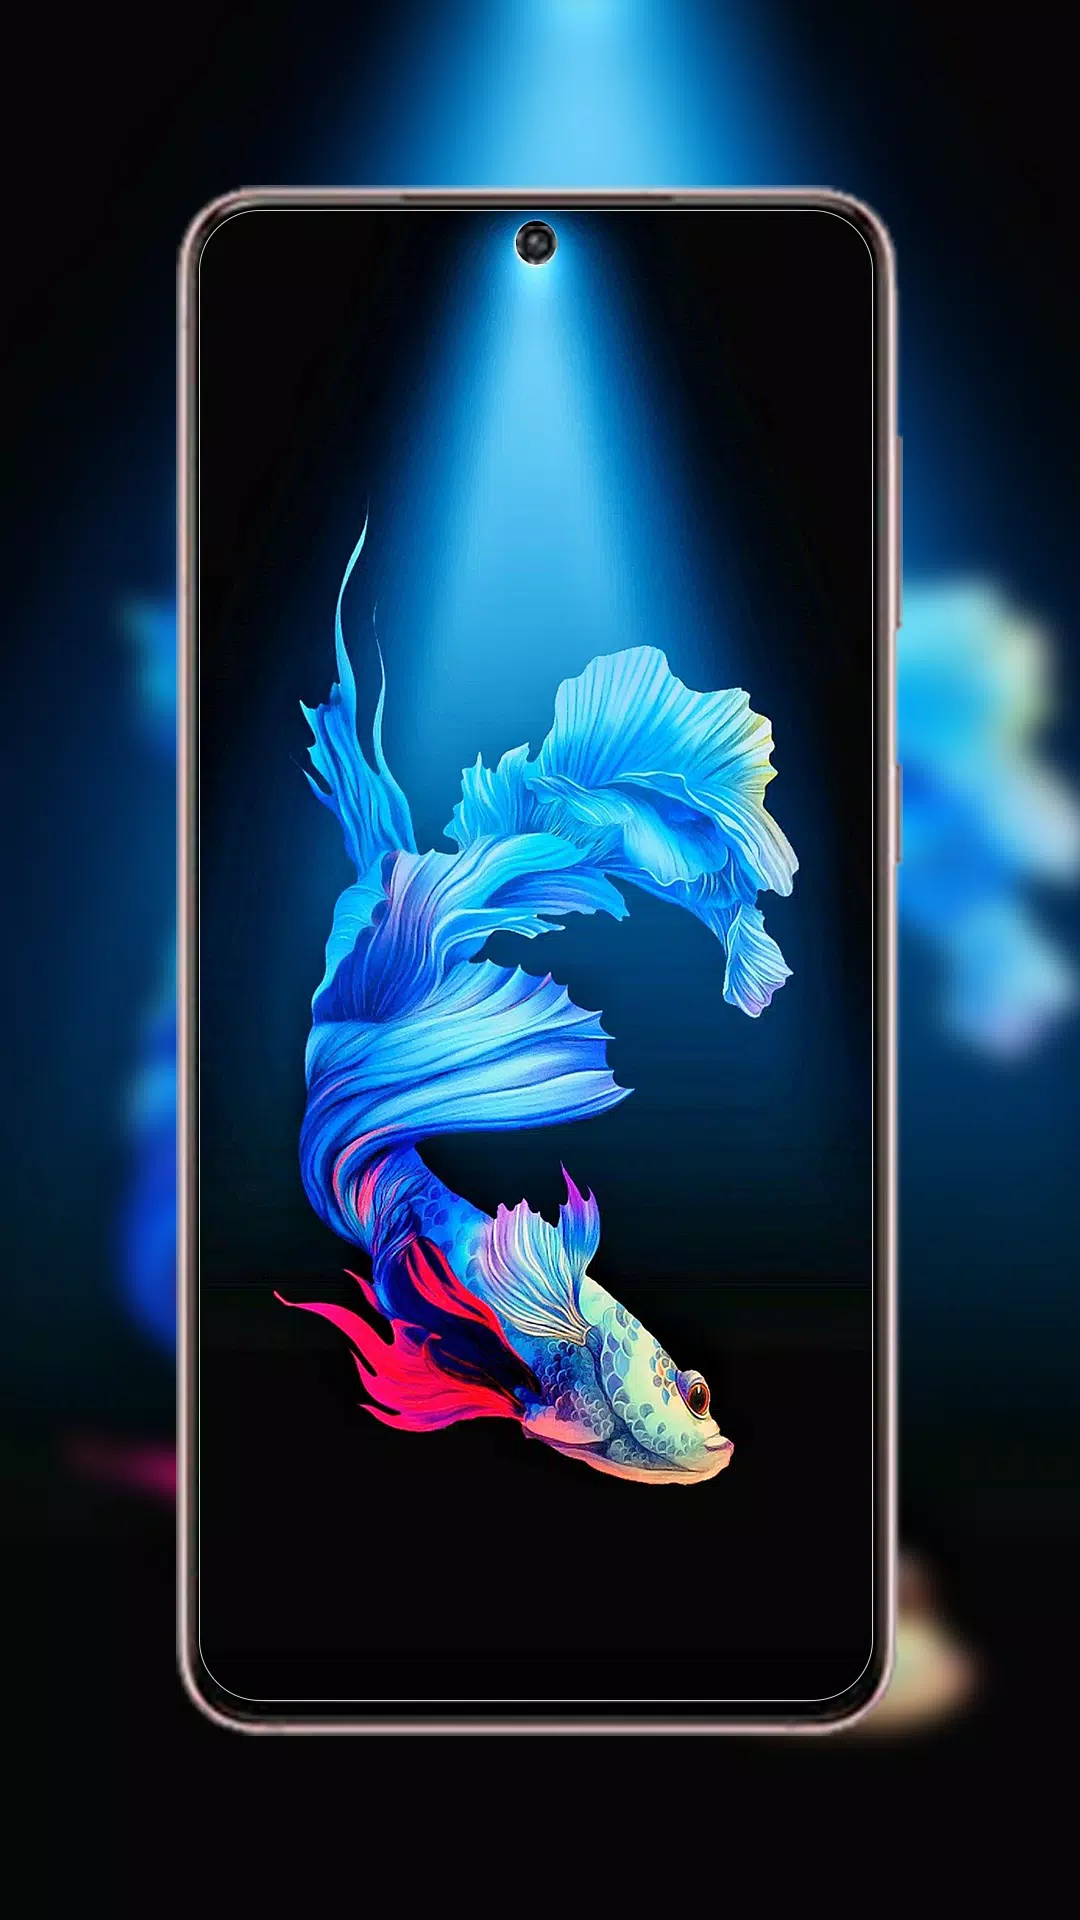 Samsung Galaxy S21 được đánh giá là một trong những chiếc điện thoại cao cấp nhất hiện nay. Để thêm phần đậm chất của chiếc điện thoại này, hãy xem ngay hình nền Samsung Galaxy S21 và cập nhật cho mình những trải nghiệm tuyệt vời nhất.